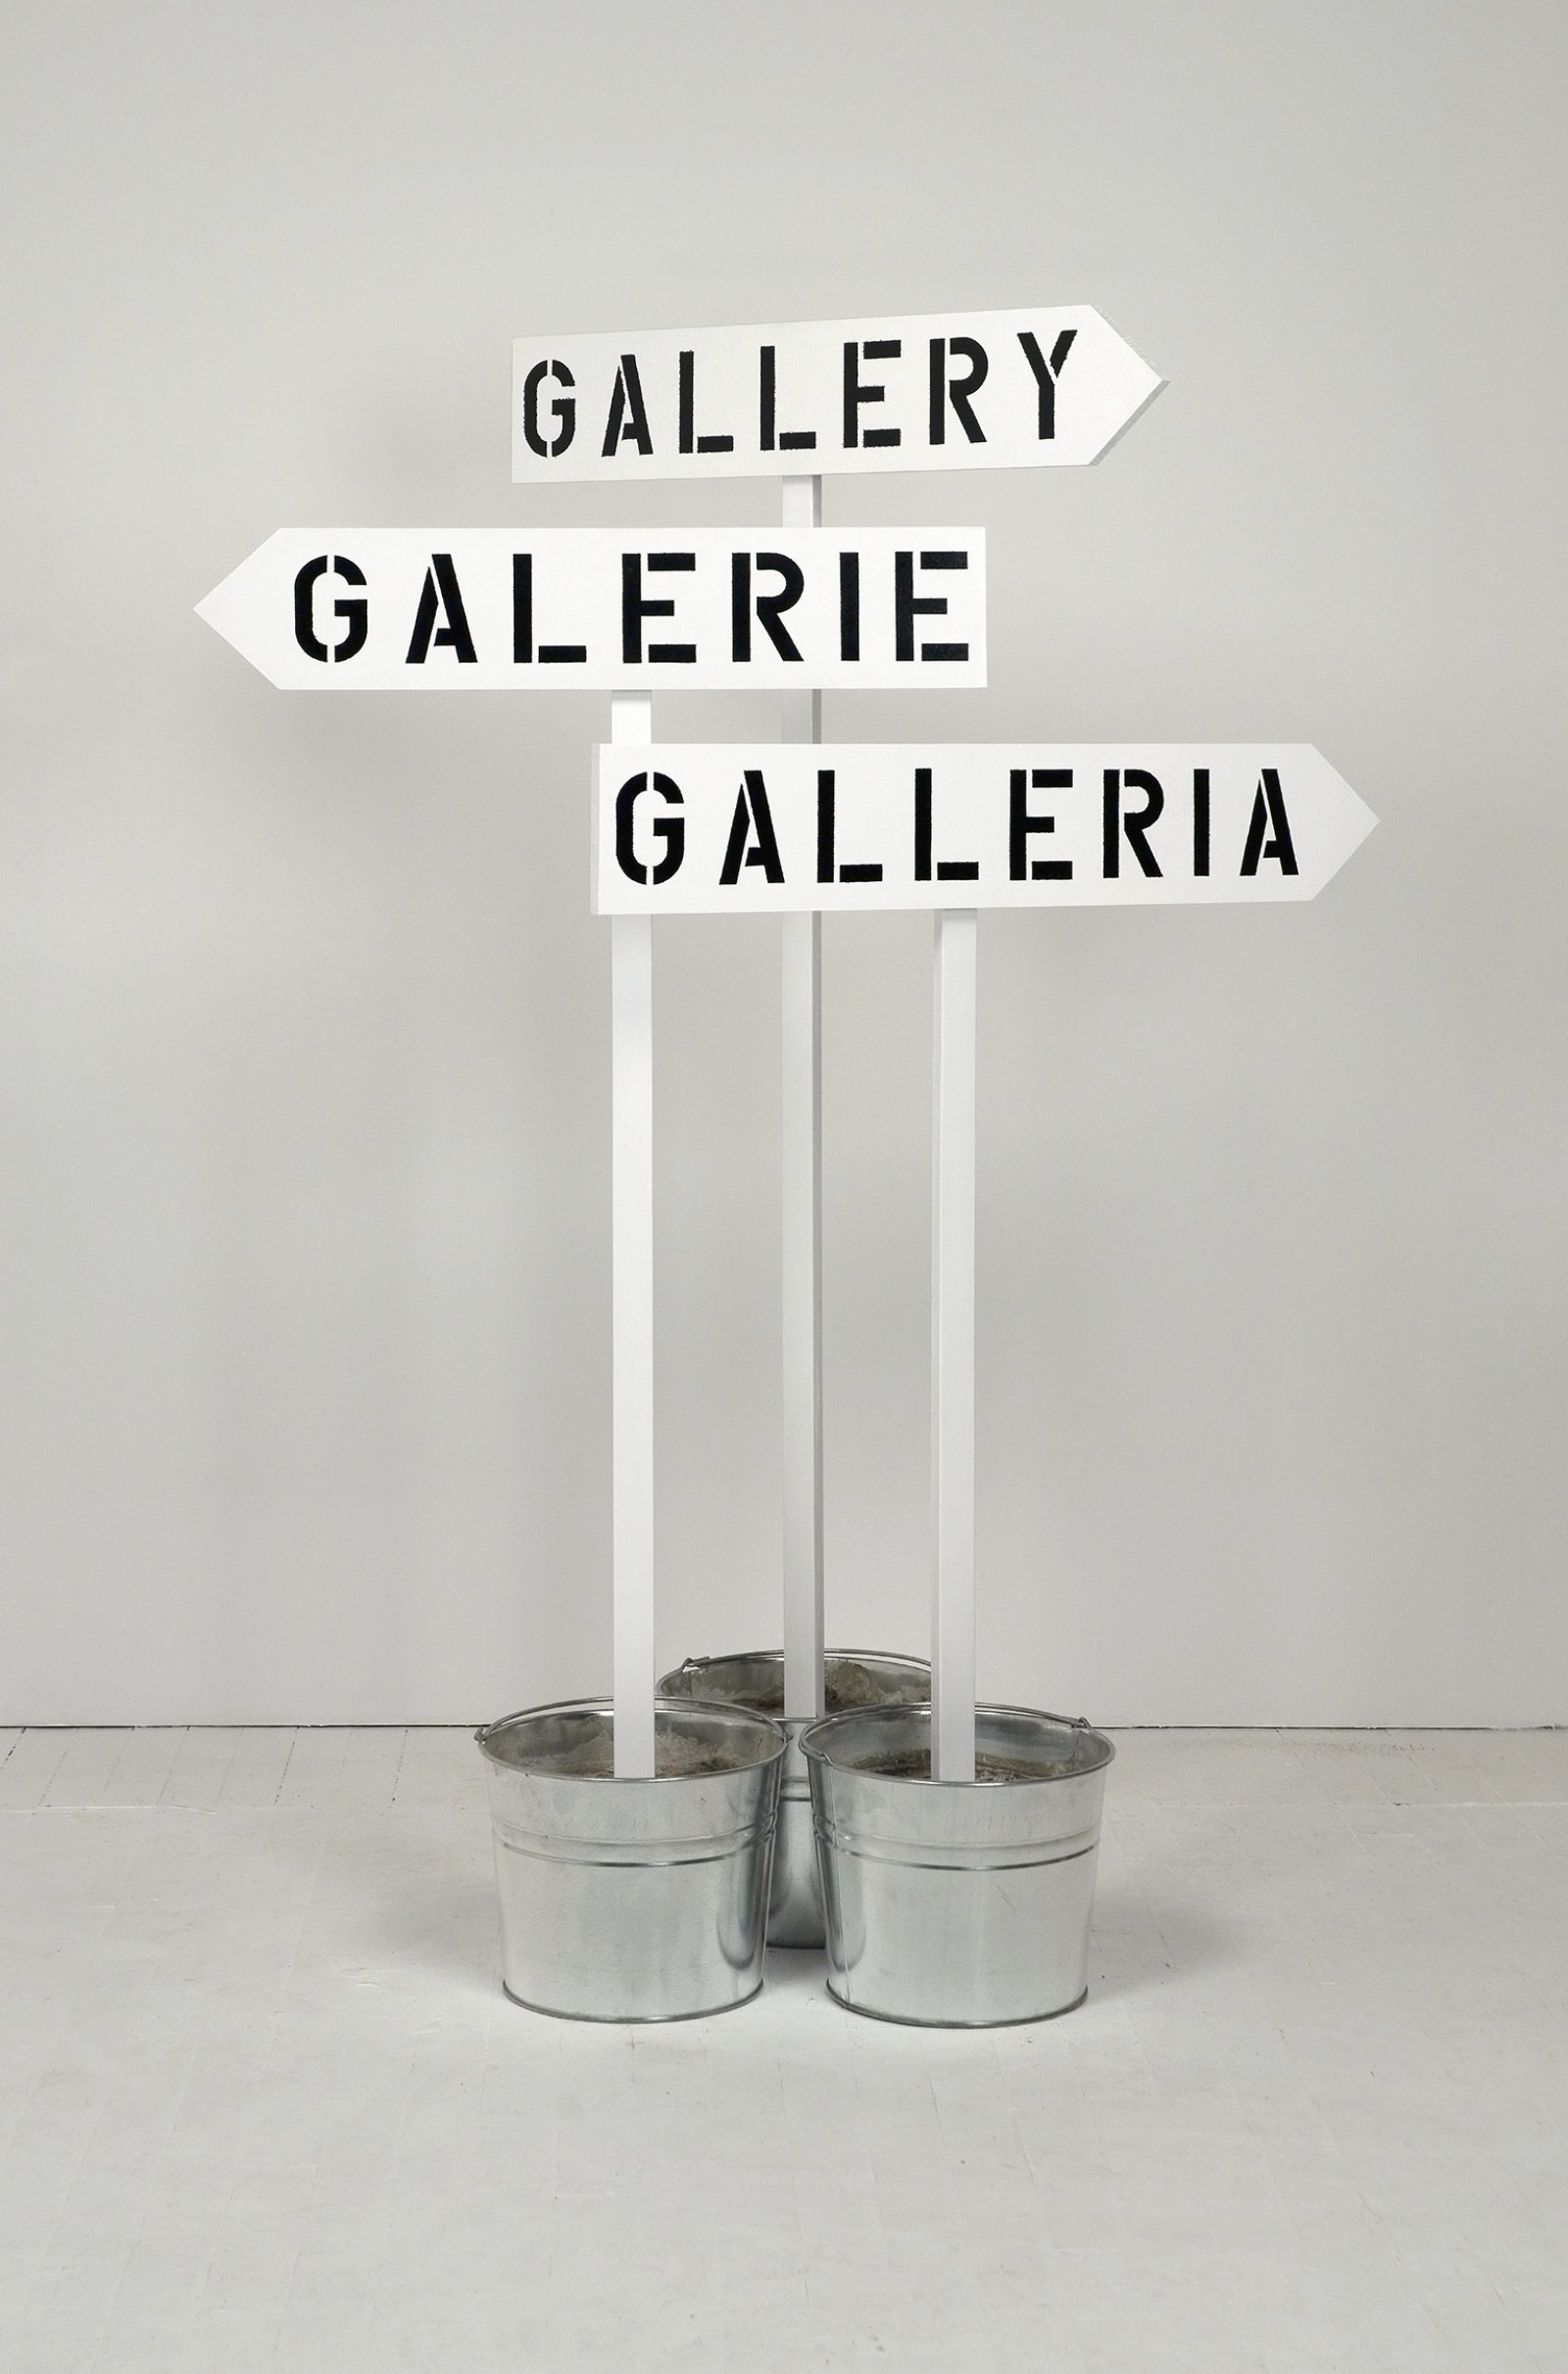 Ron Terada, Gallery, Galerie, Galleria, 2010, paint, wood, concrete, 3 aluminum pails, 62 x 44 x 19 in. (158 x 112 x 48 cm)